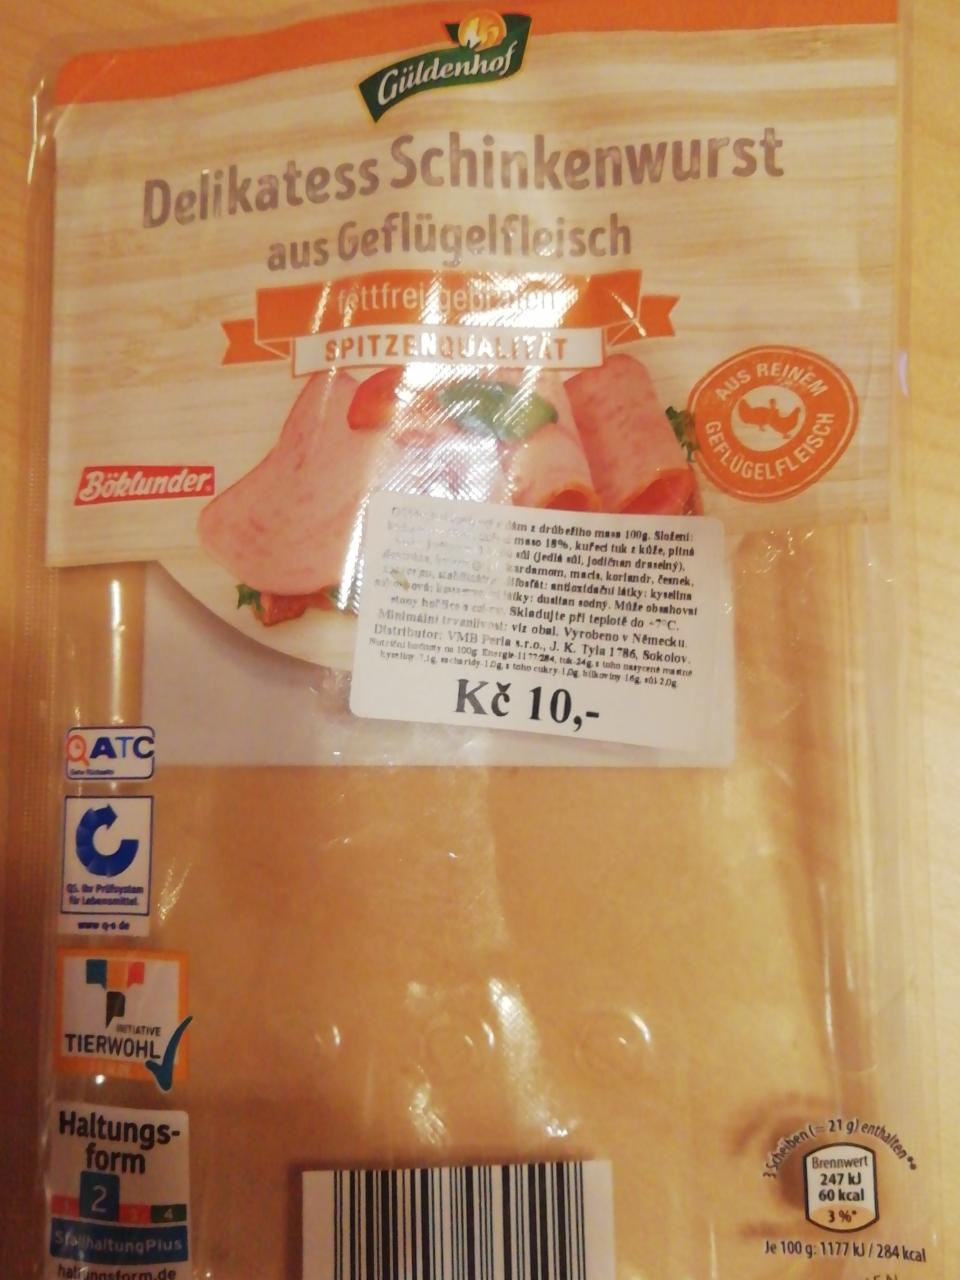 Fotografie - Delikatess Schinkenwurst aus Geflügelfleisch Güldenhof